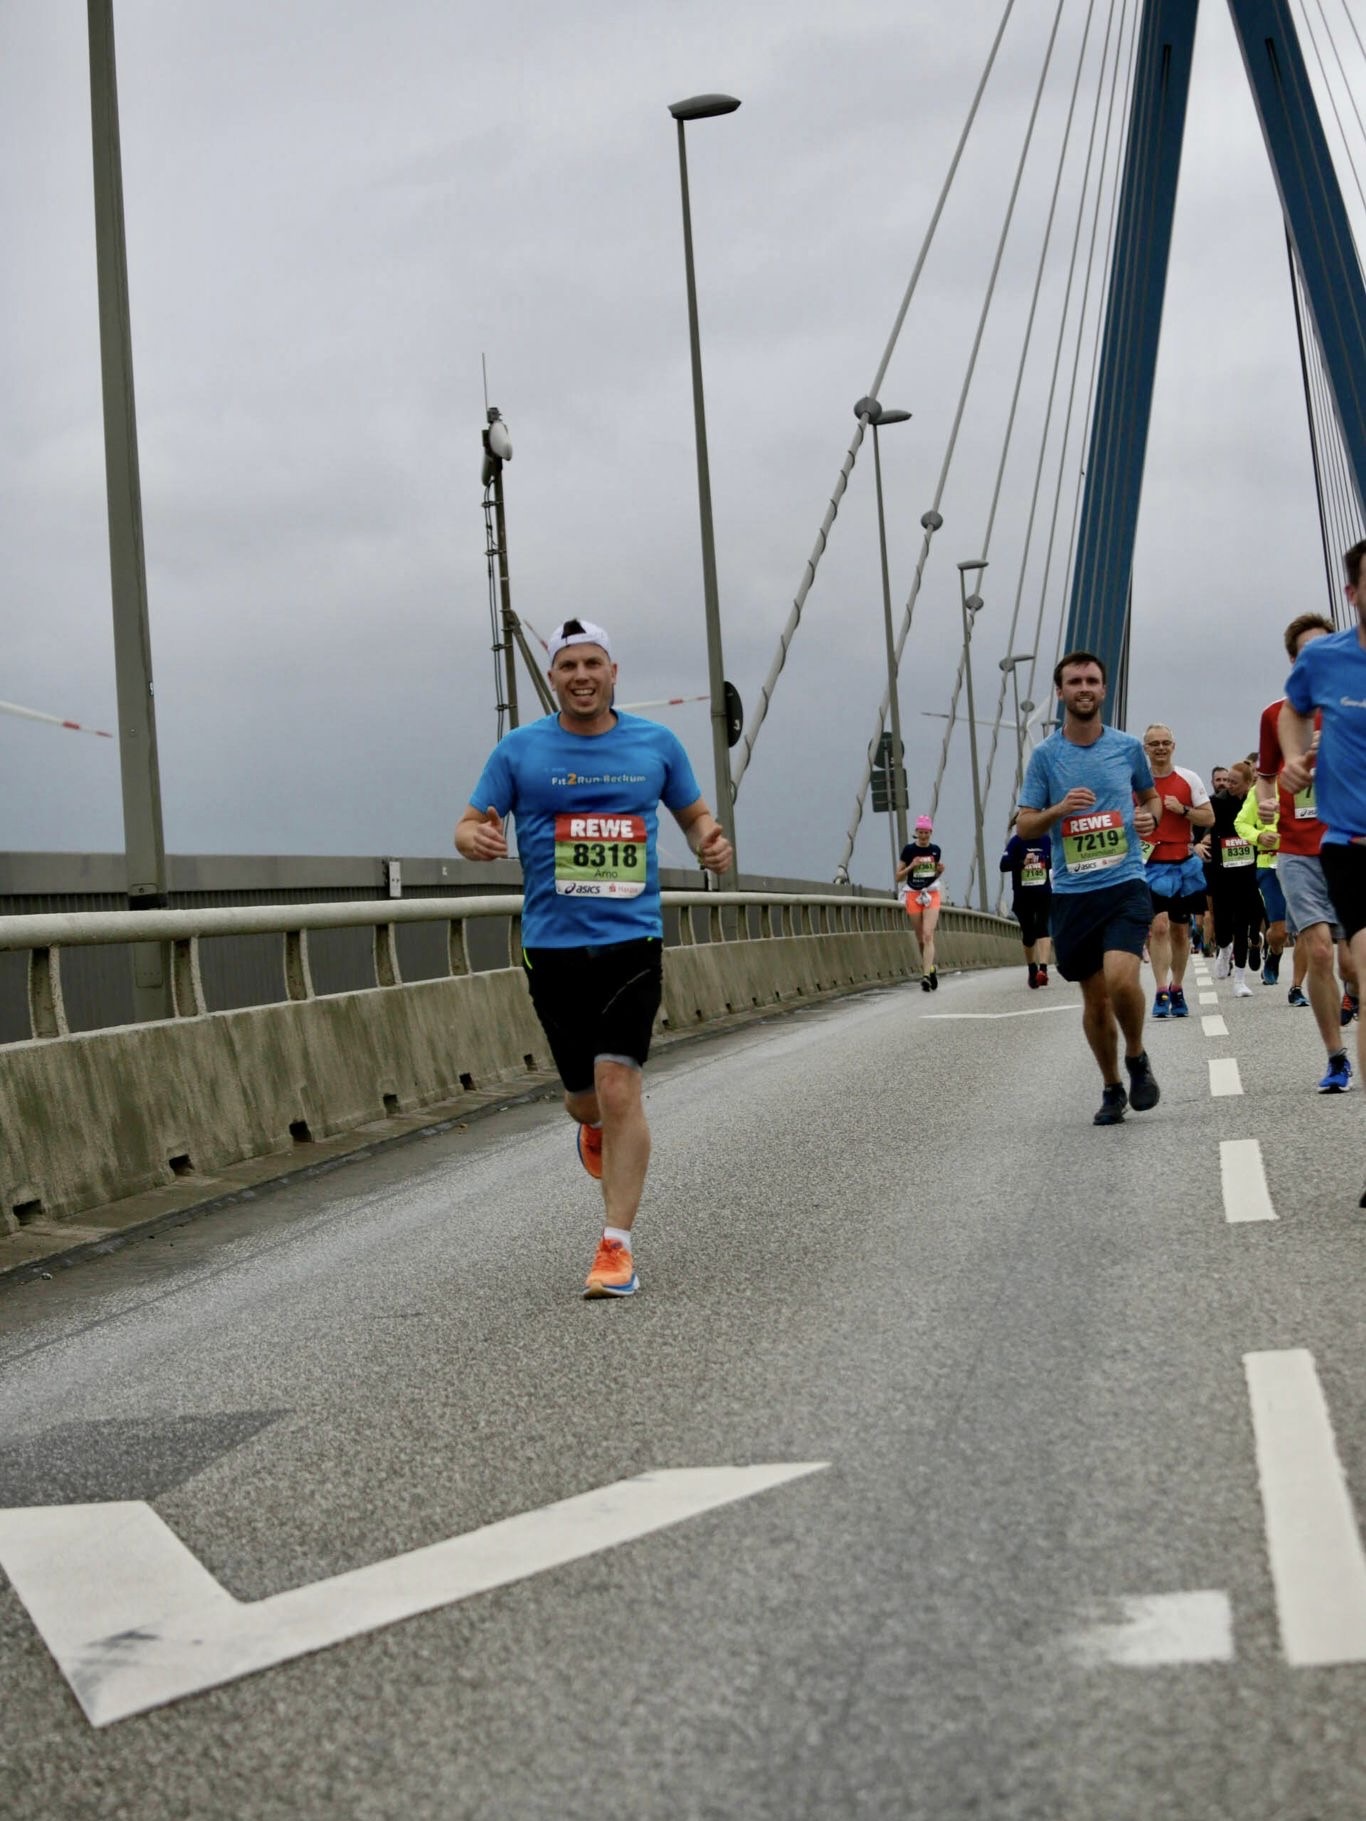 Running with a smile; Bild: Arno Ierardi, Meine-Sportfotos